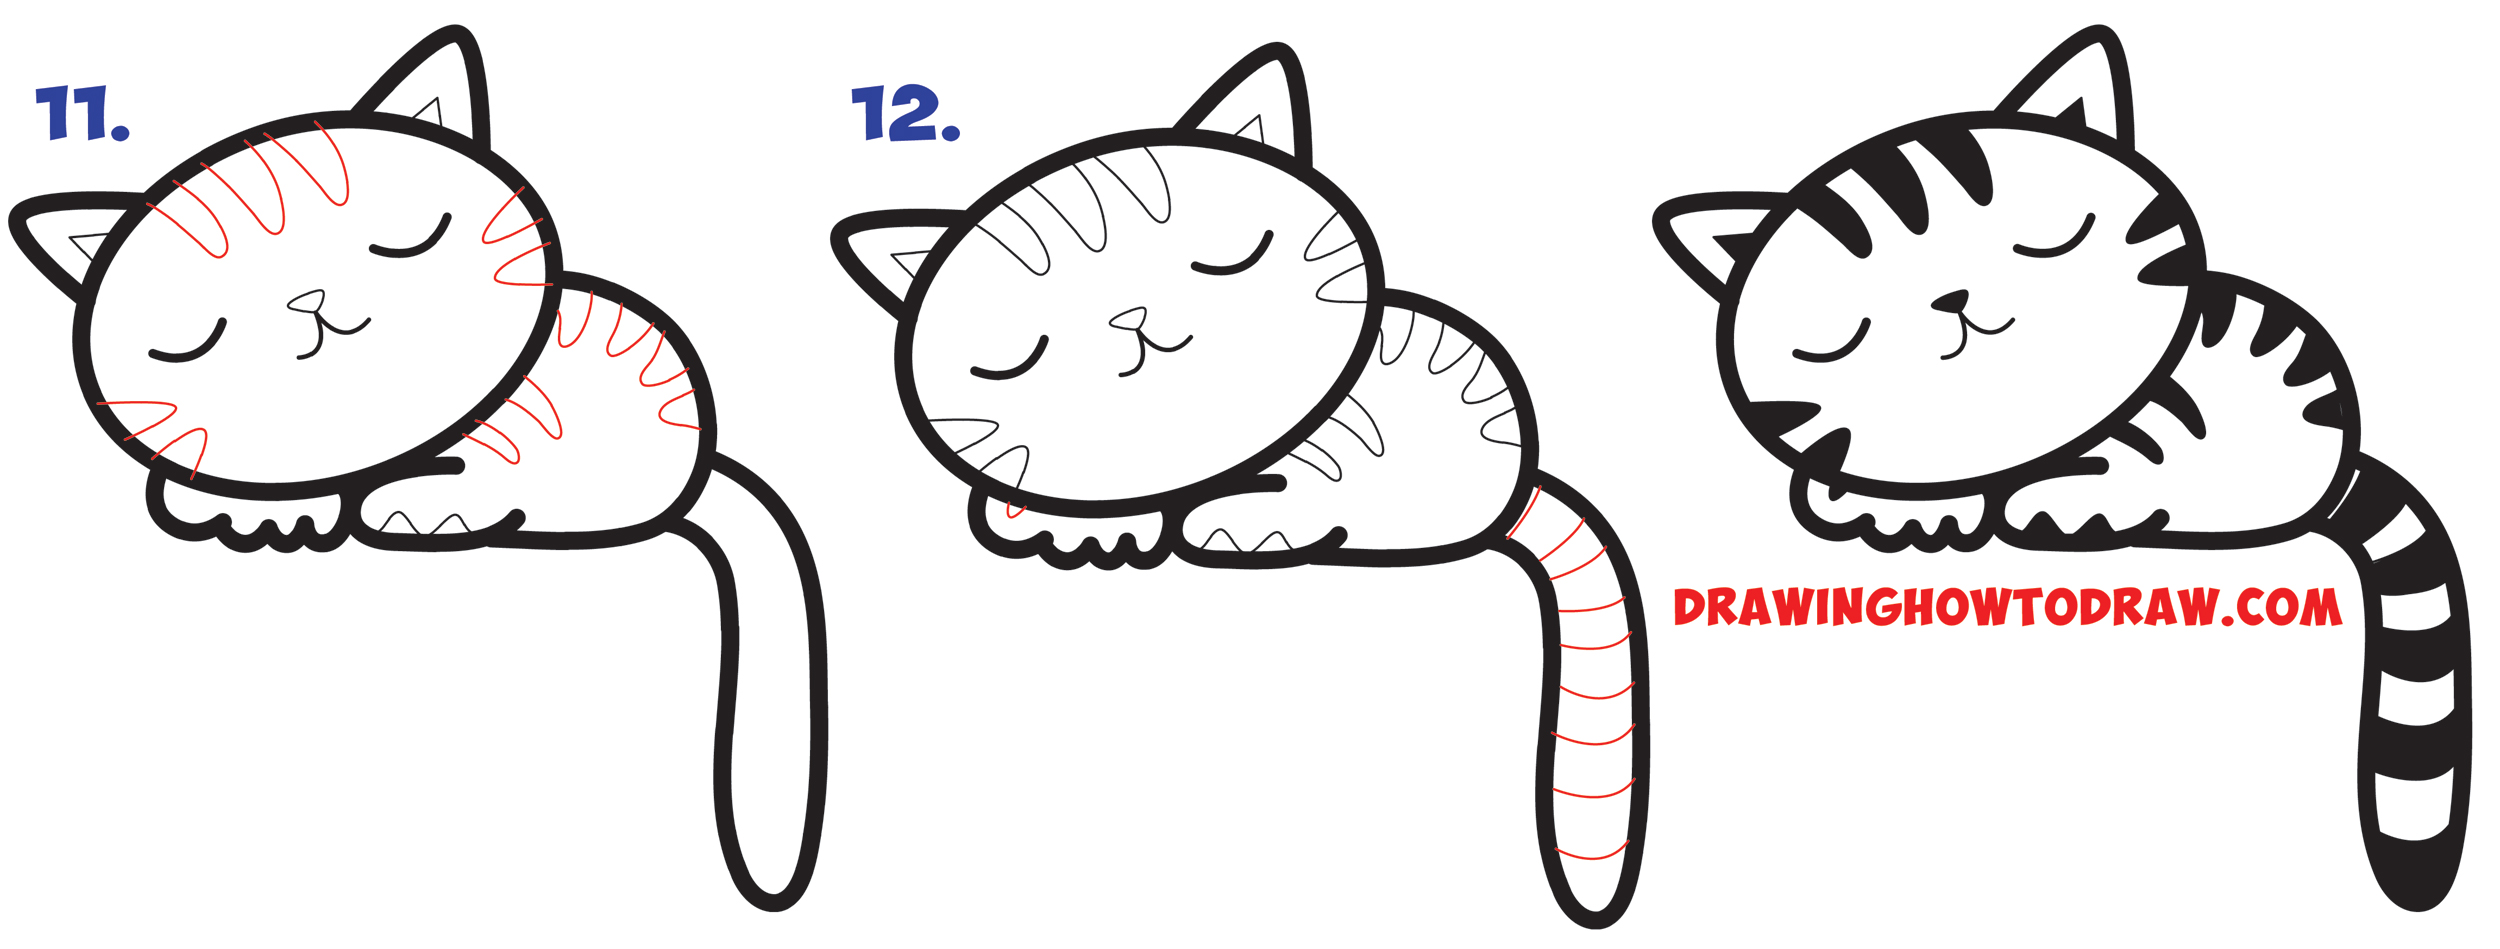 How to Draw a Supercute Kawaii / Cartoon Cat / Kitten